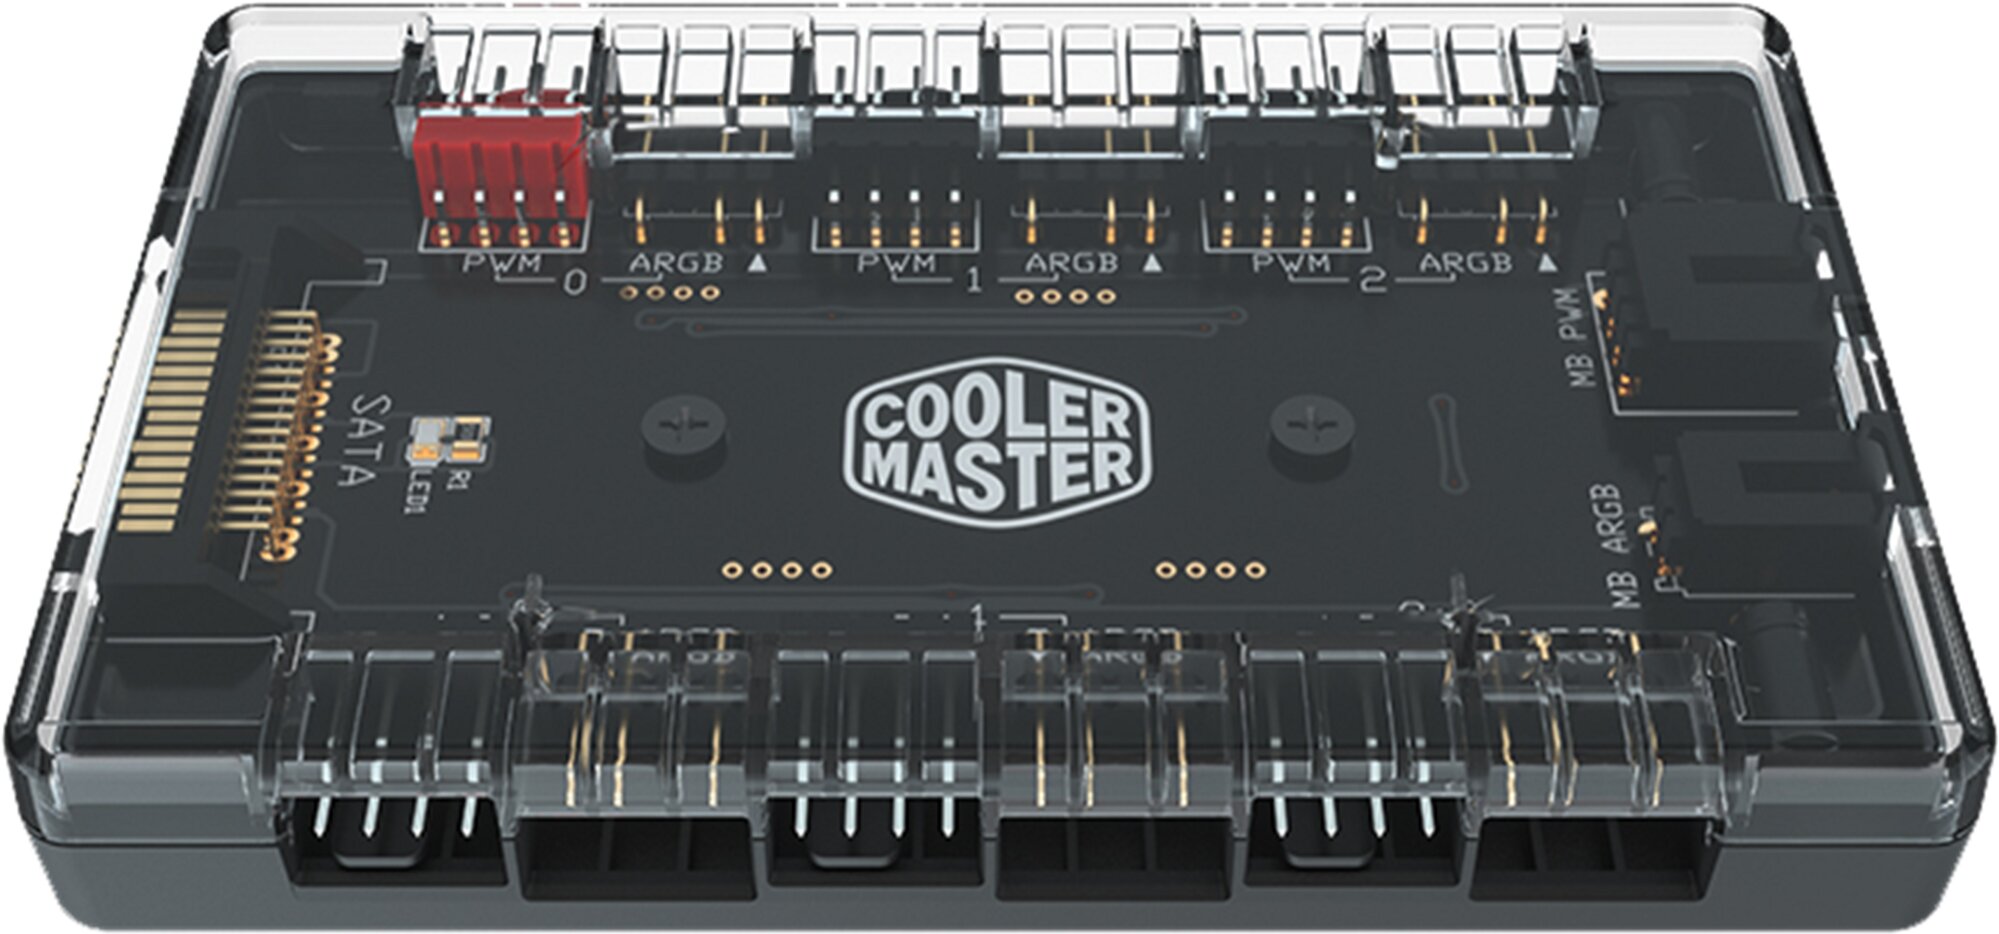 Cooler Master hub ARGB a PWM